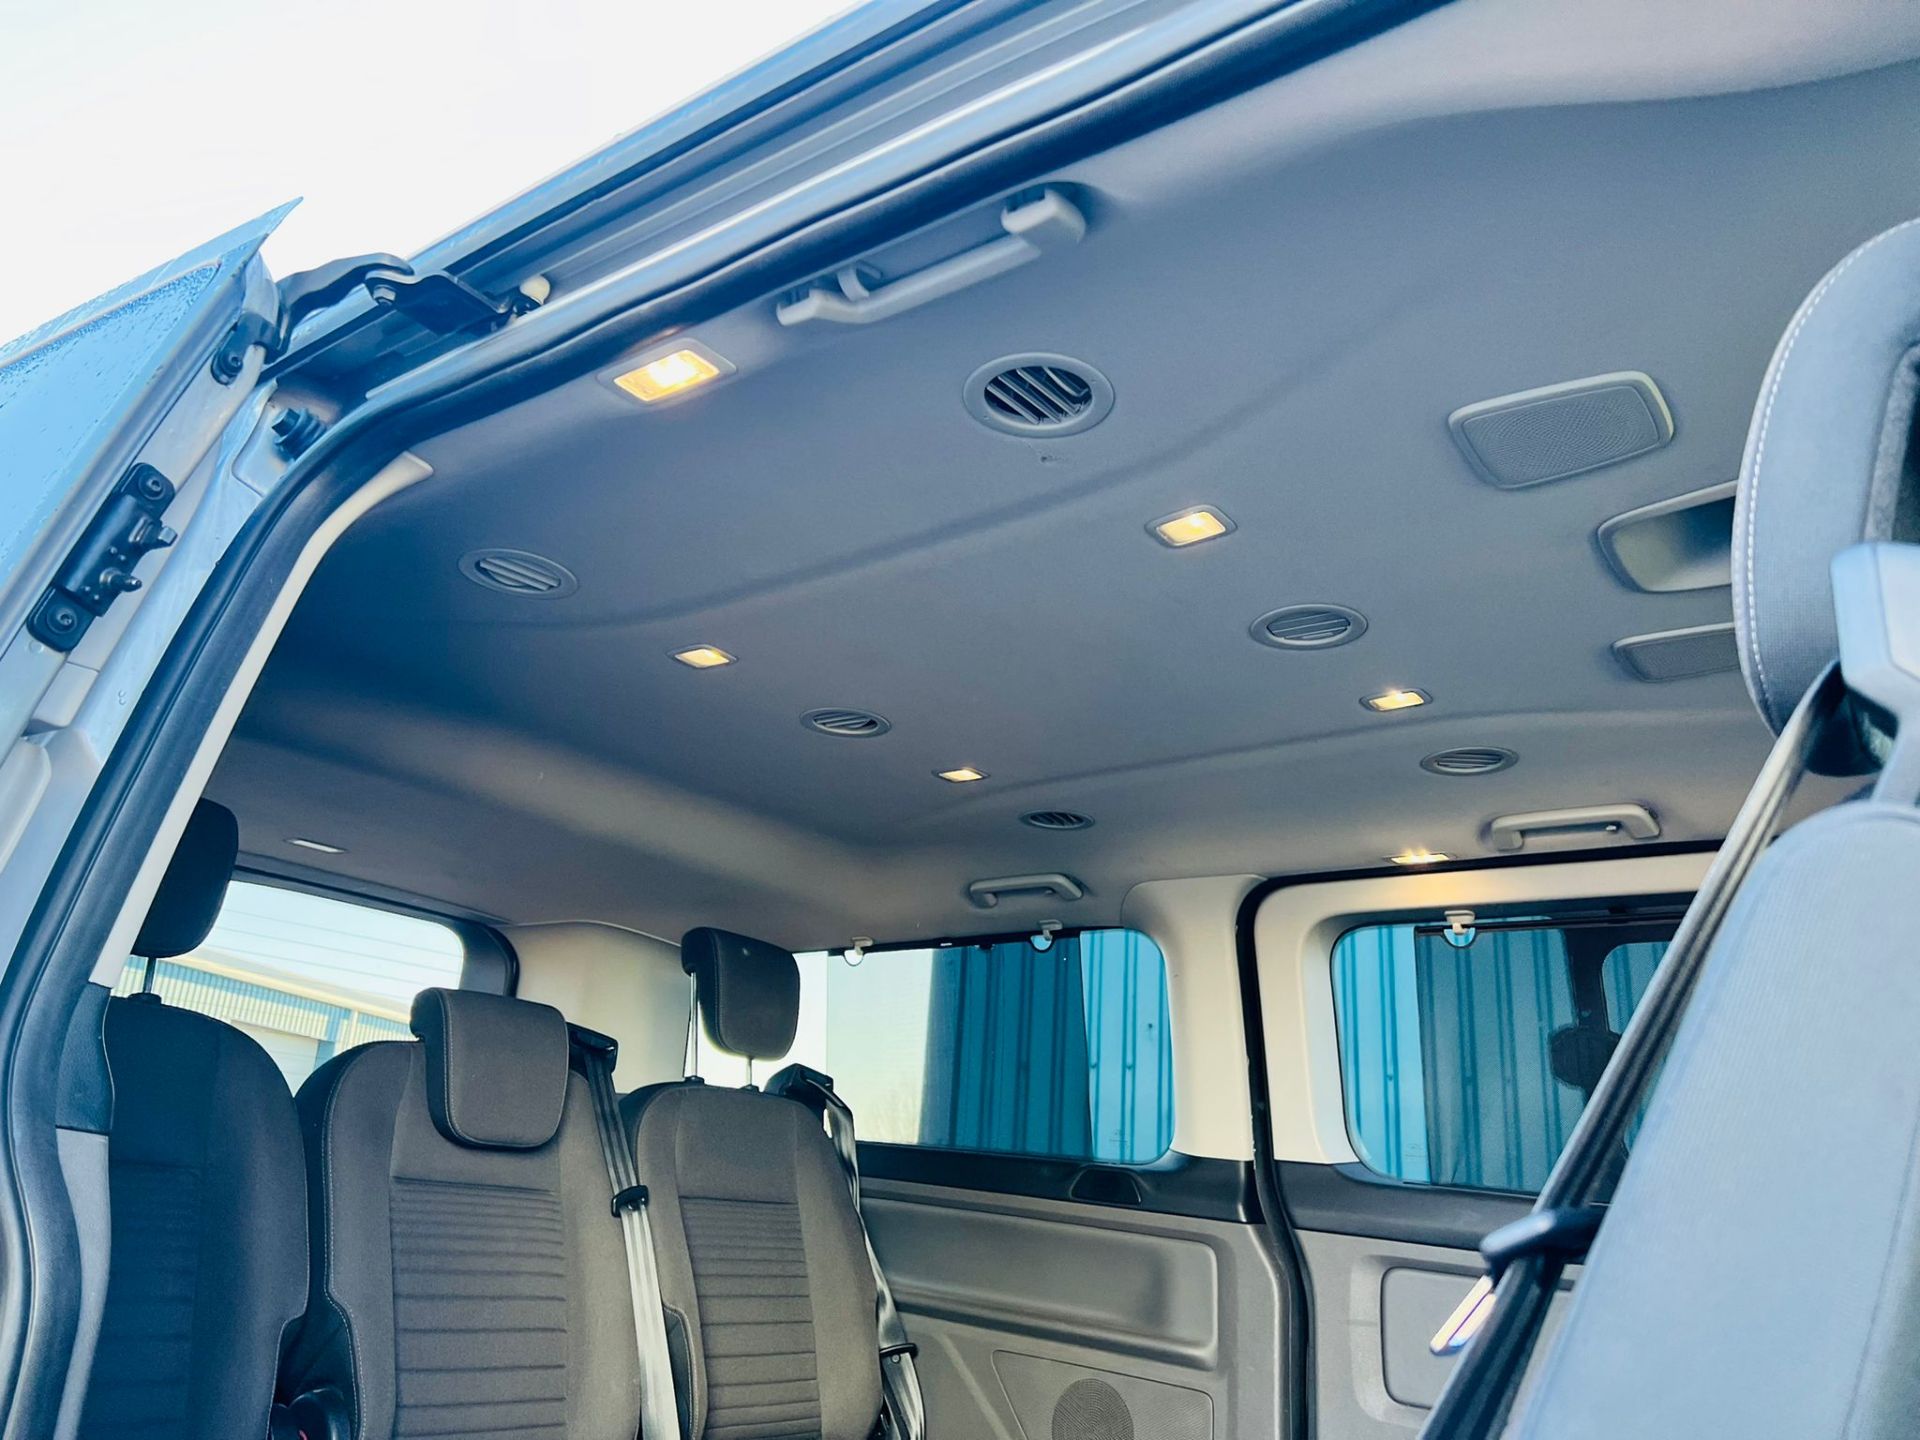 (Reserve Met) Ford Transit Custom 310 130 2.0 Tdci Titanium 9 Seater MiniBus 2019 Model - Air Con - - Image 32 of 36